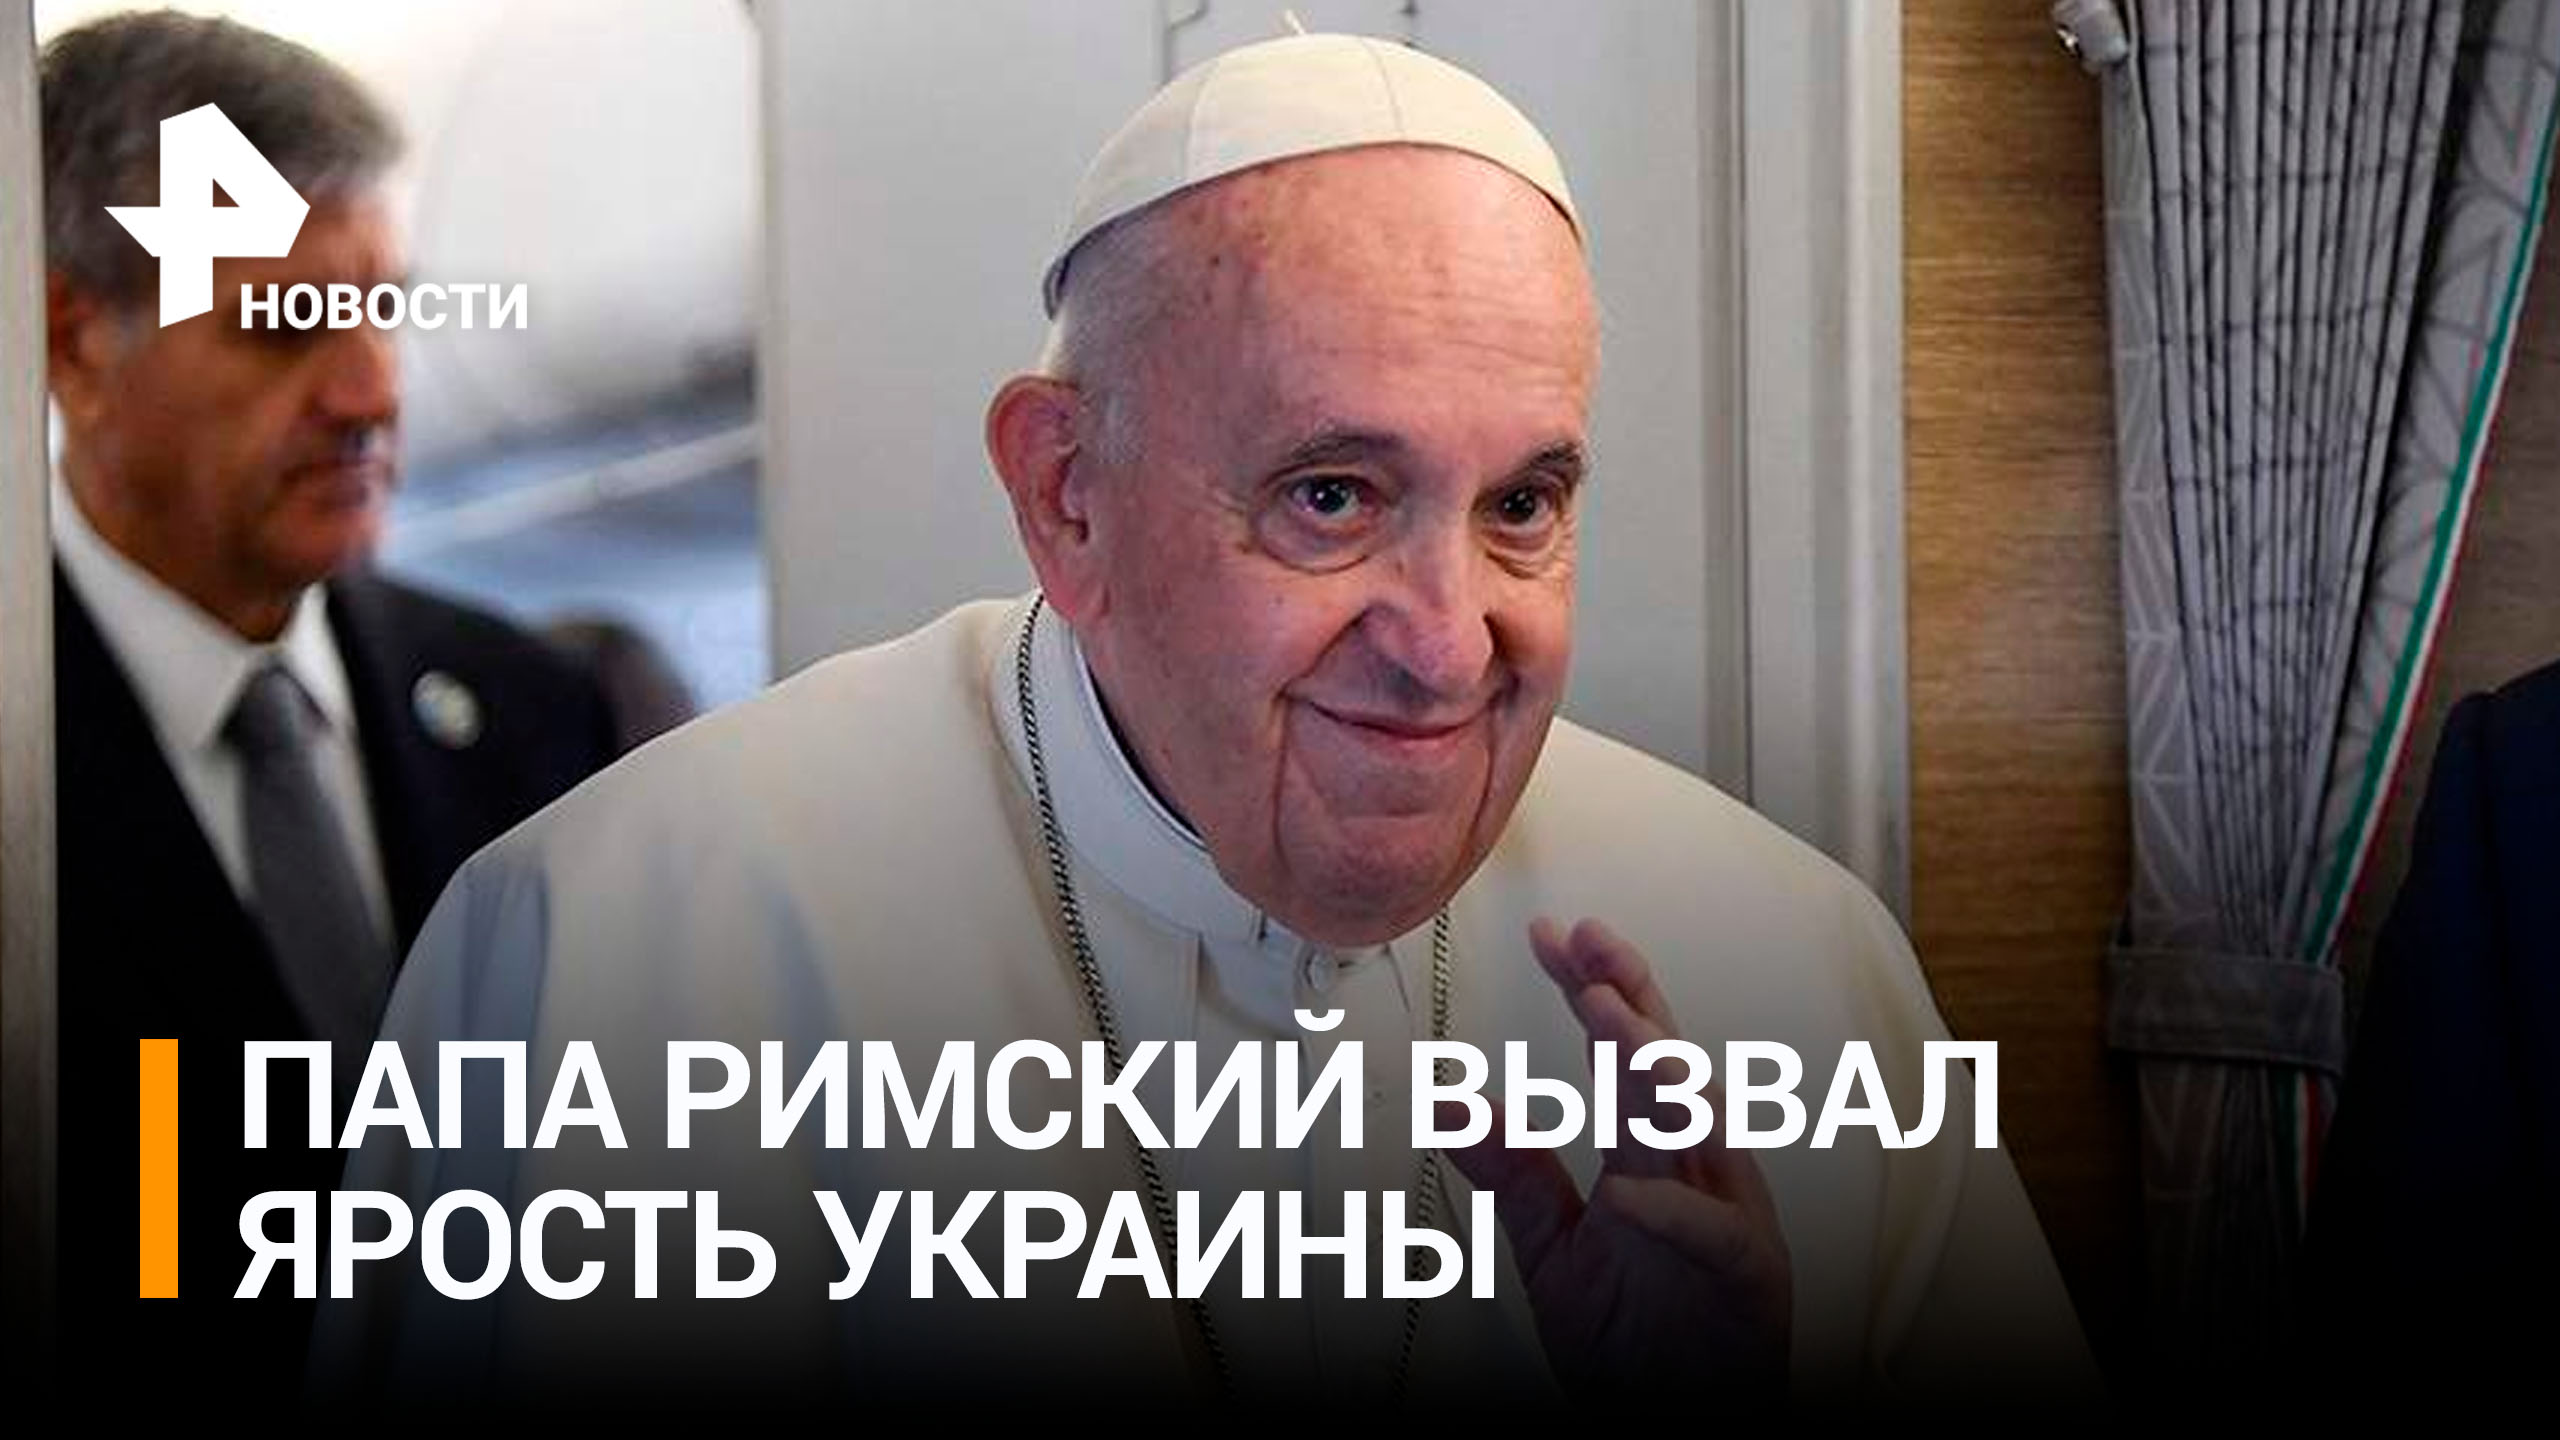 Слова папы римского о великой России разозлили украинских дипломатов / РЕН Новости